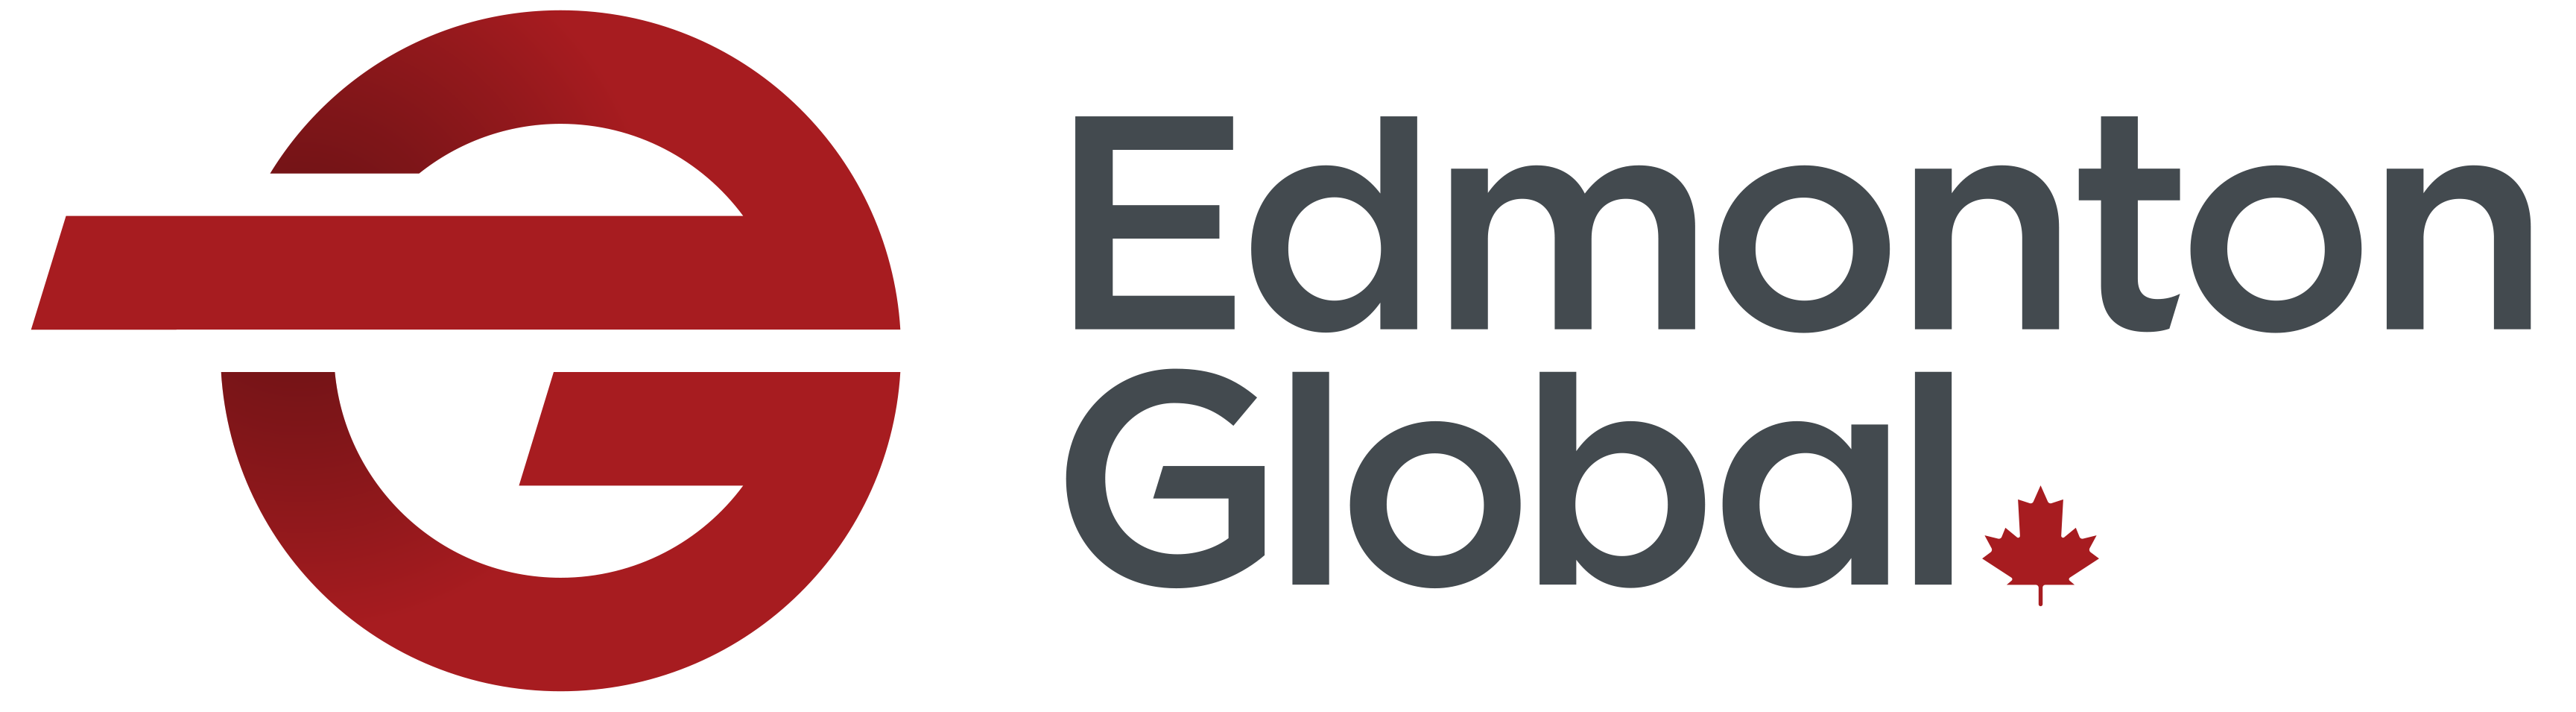 Edmonton Global Logo